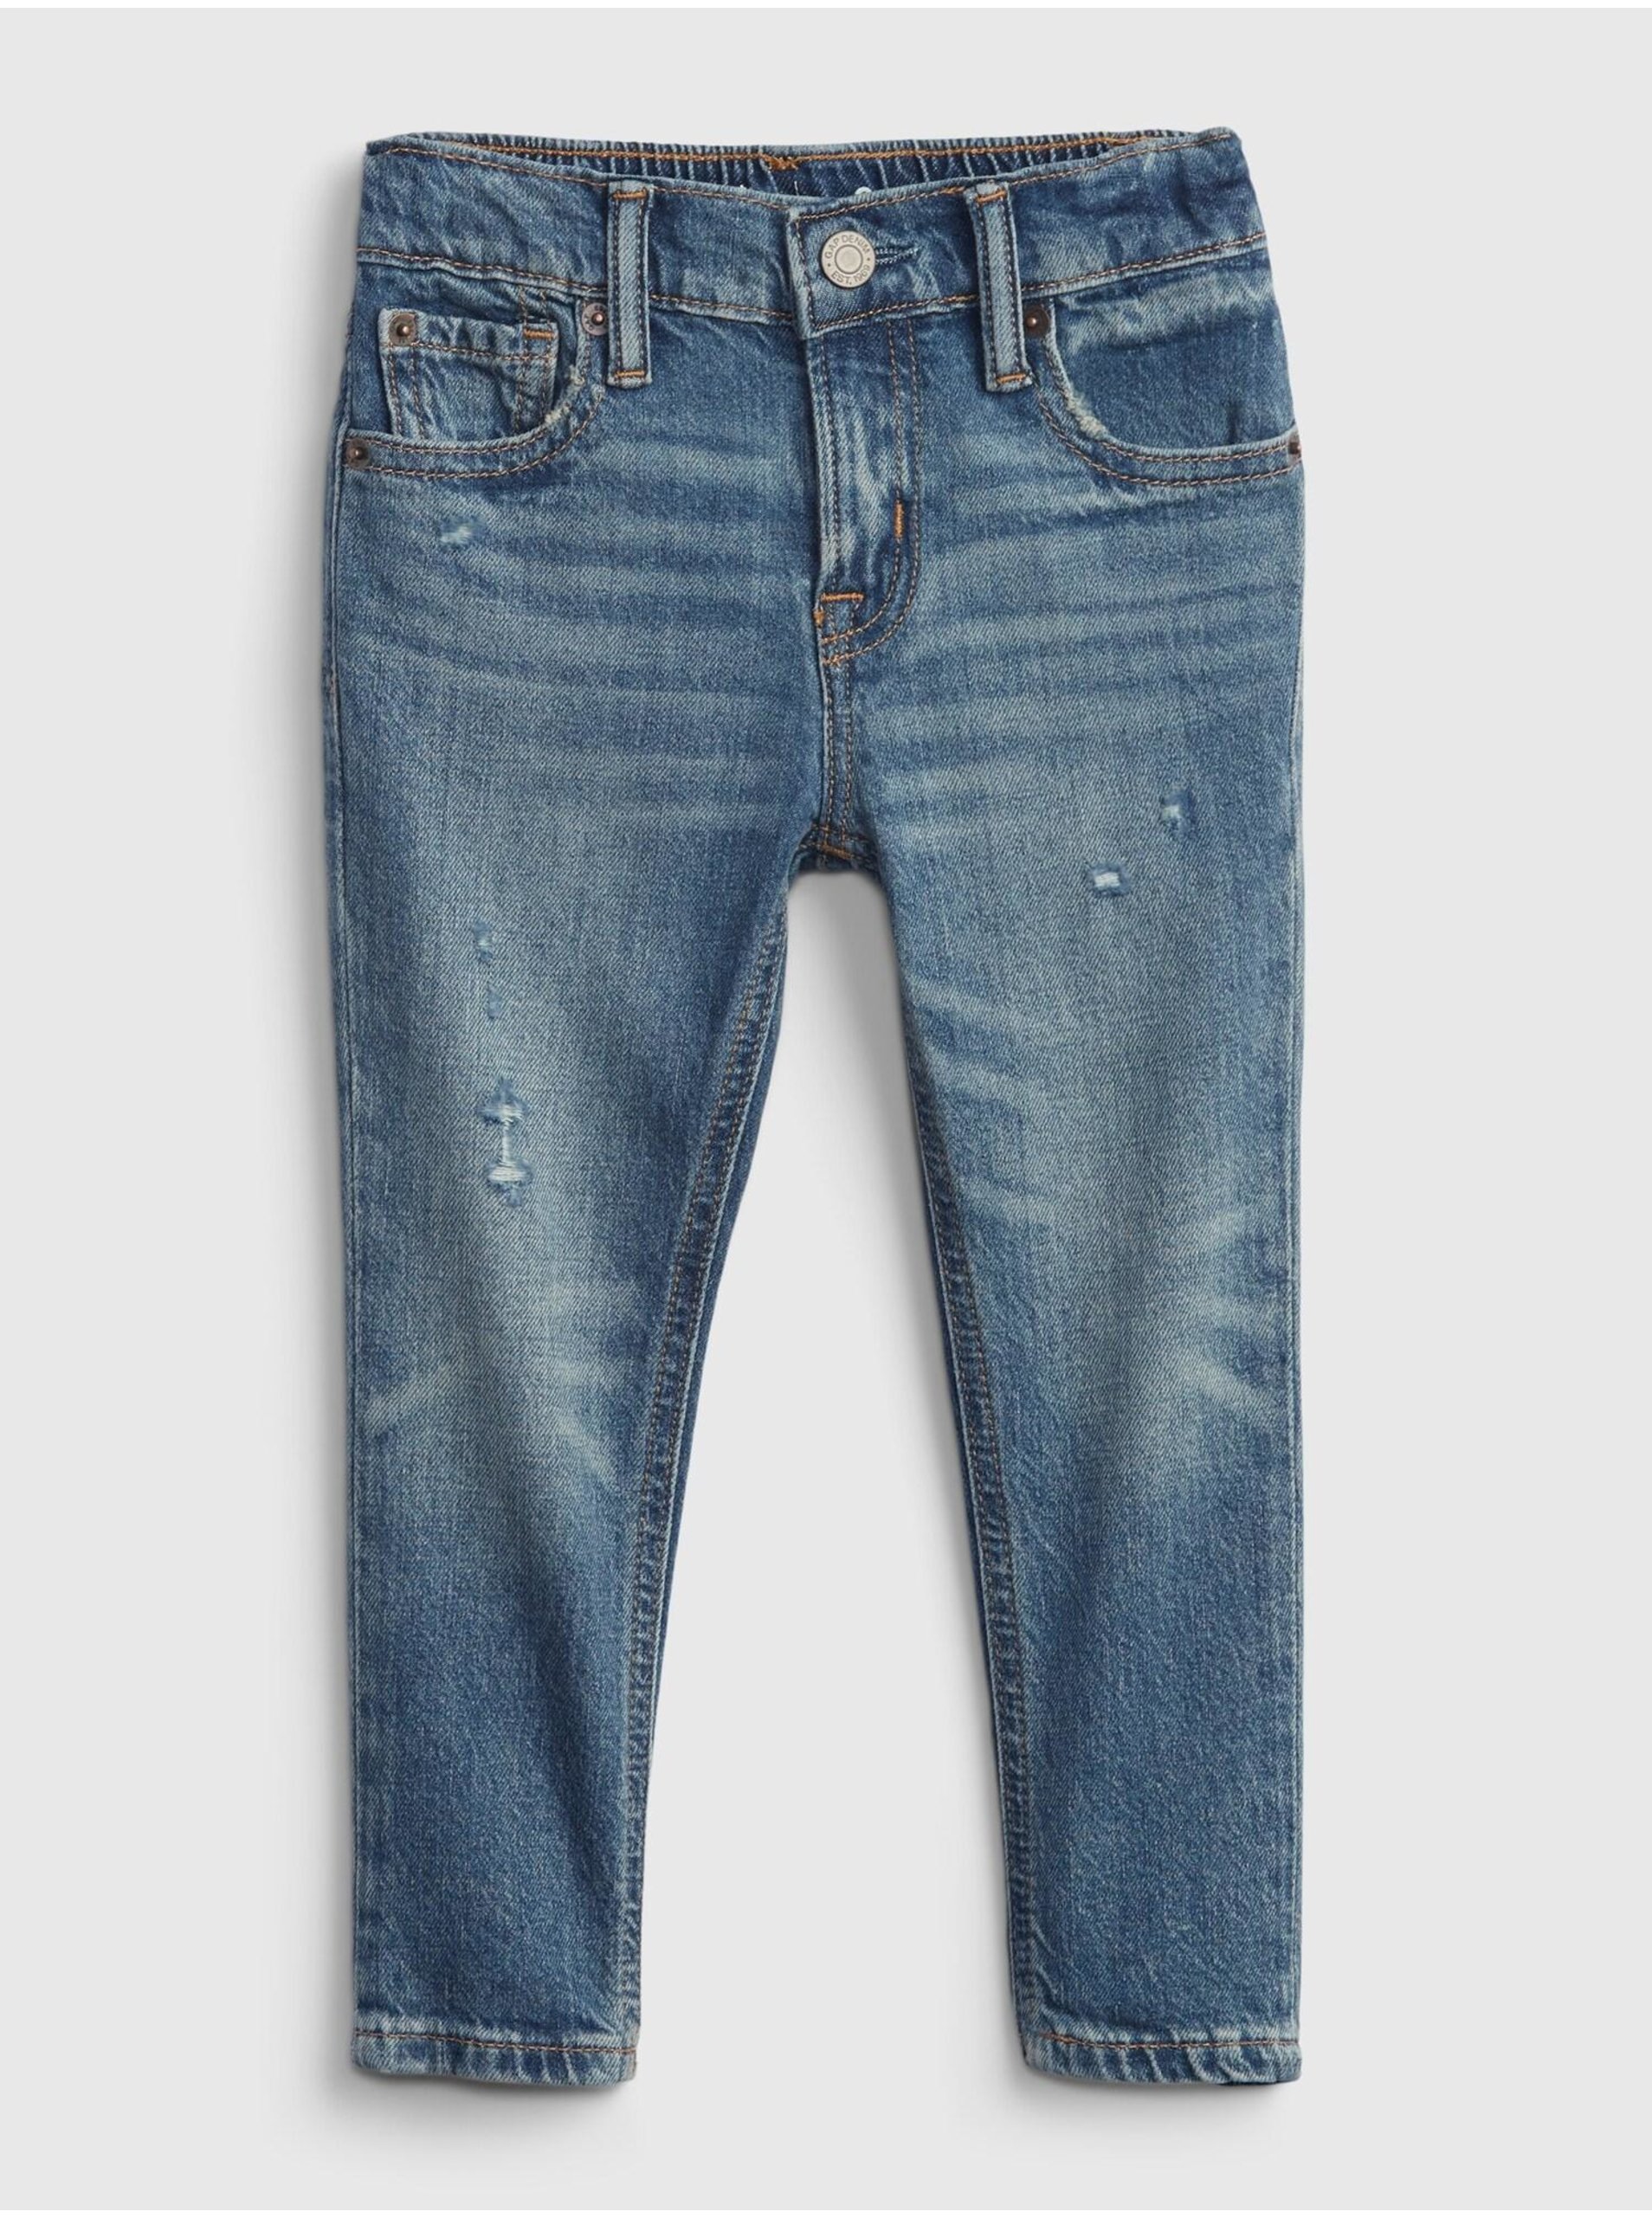 E-shop Modré klučičí džíny džinsy easy taper easy taper